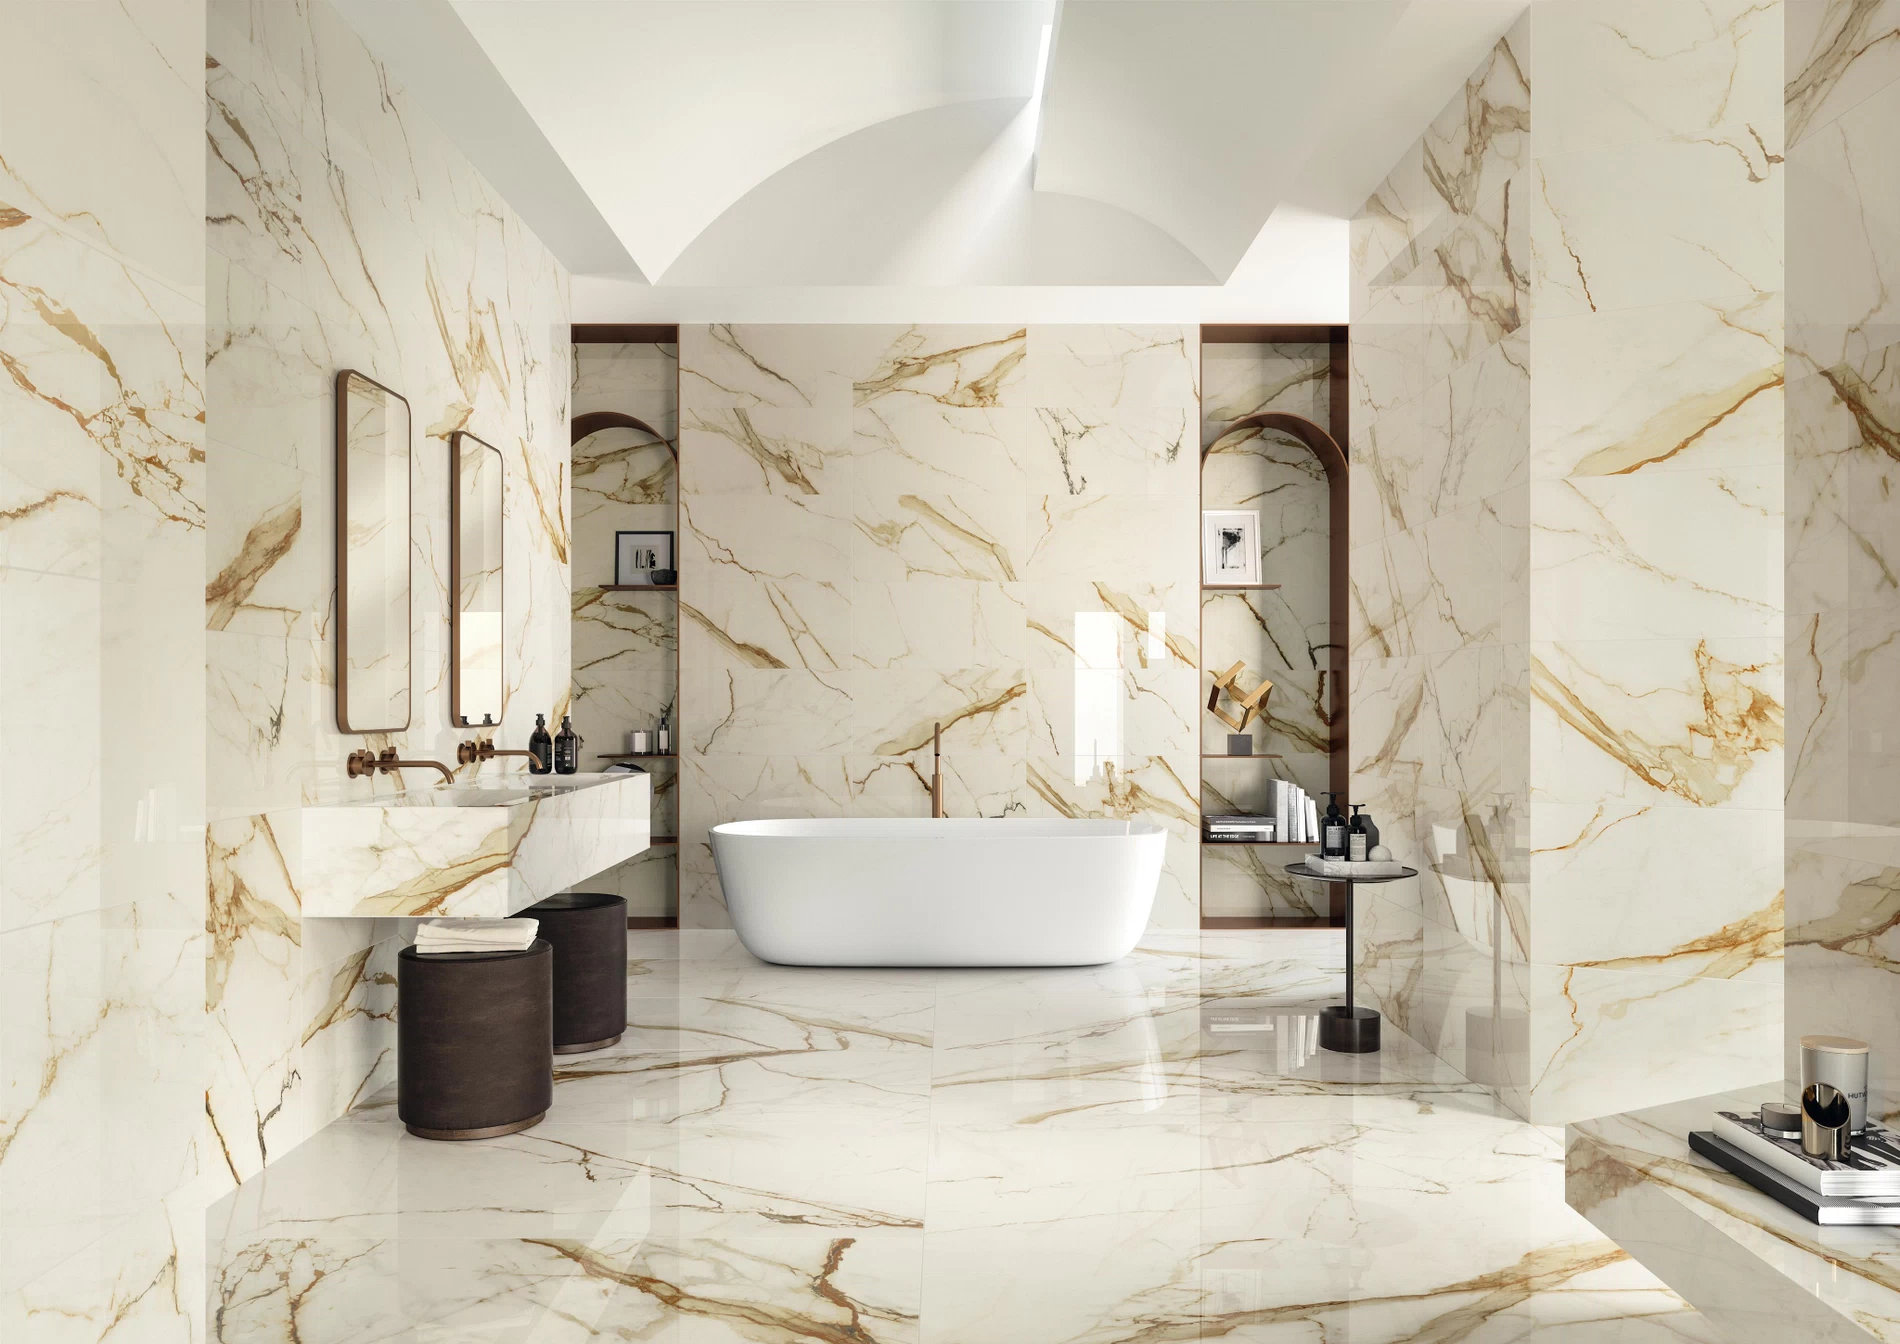 Bathroom Tiles Premium Italian, Commercial Bathroom Wall Tile Ideas